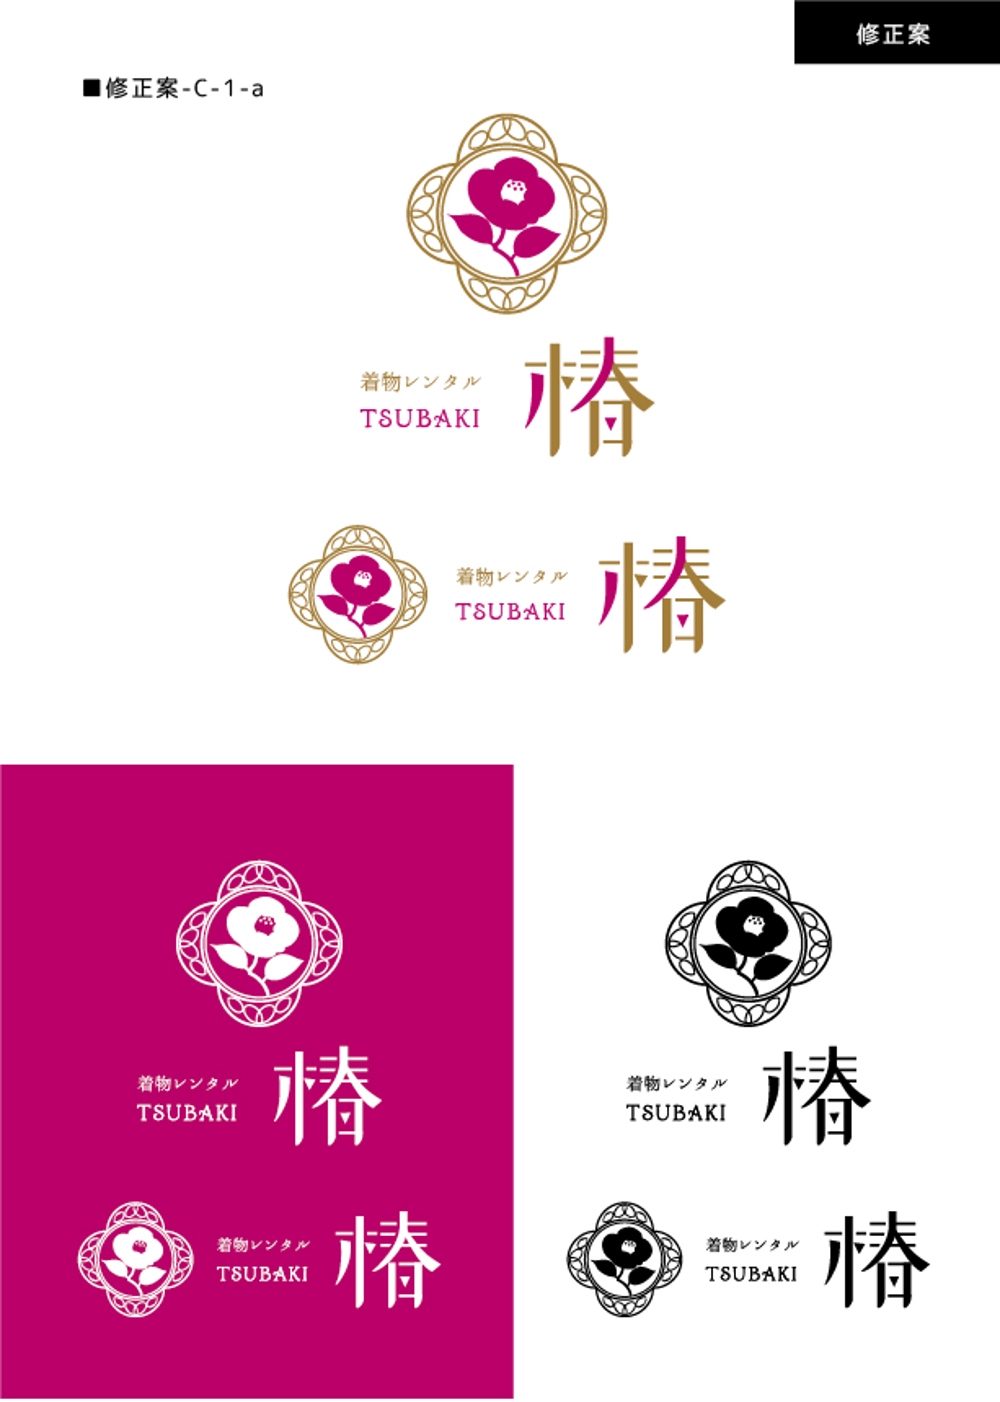 レンタル着物 椿 logo-04-01.jpg